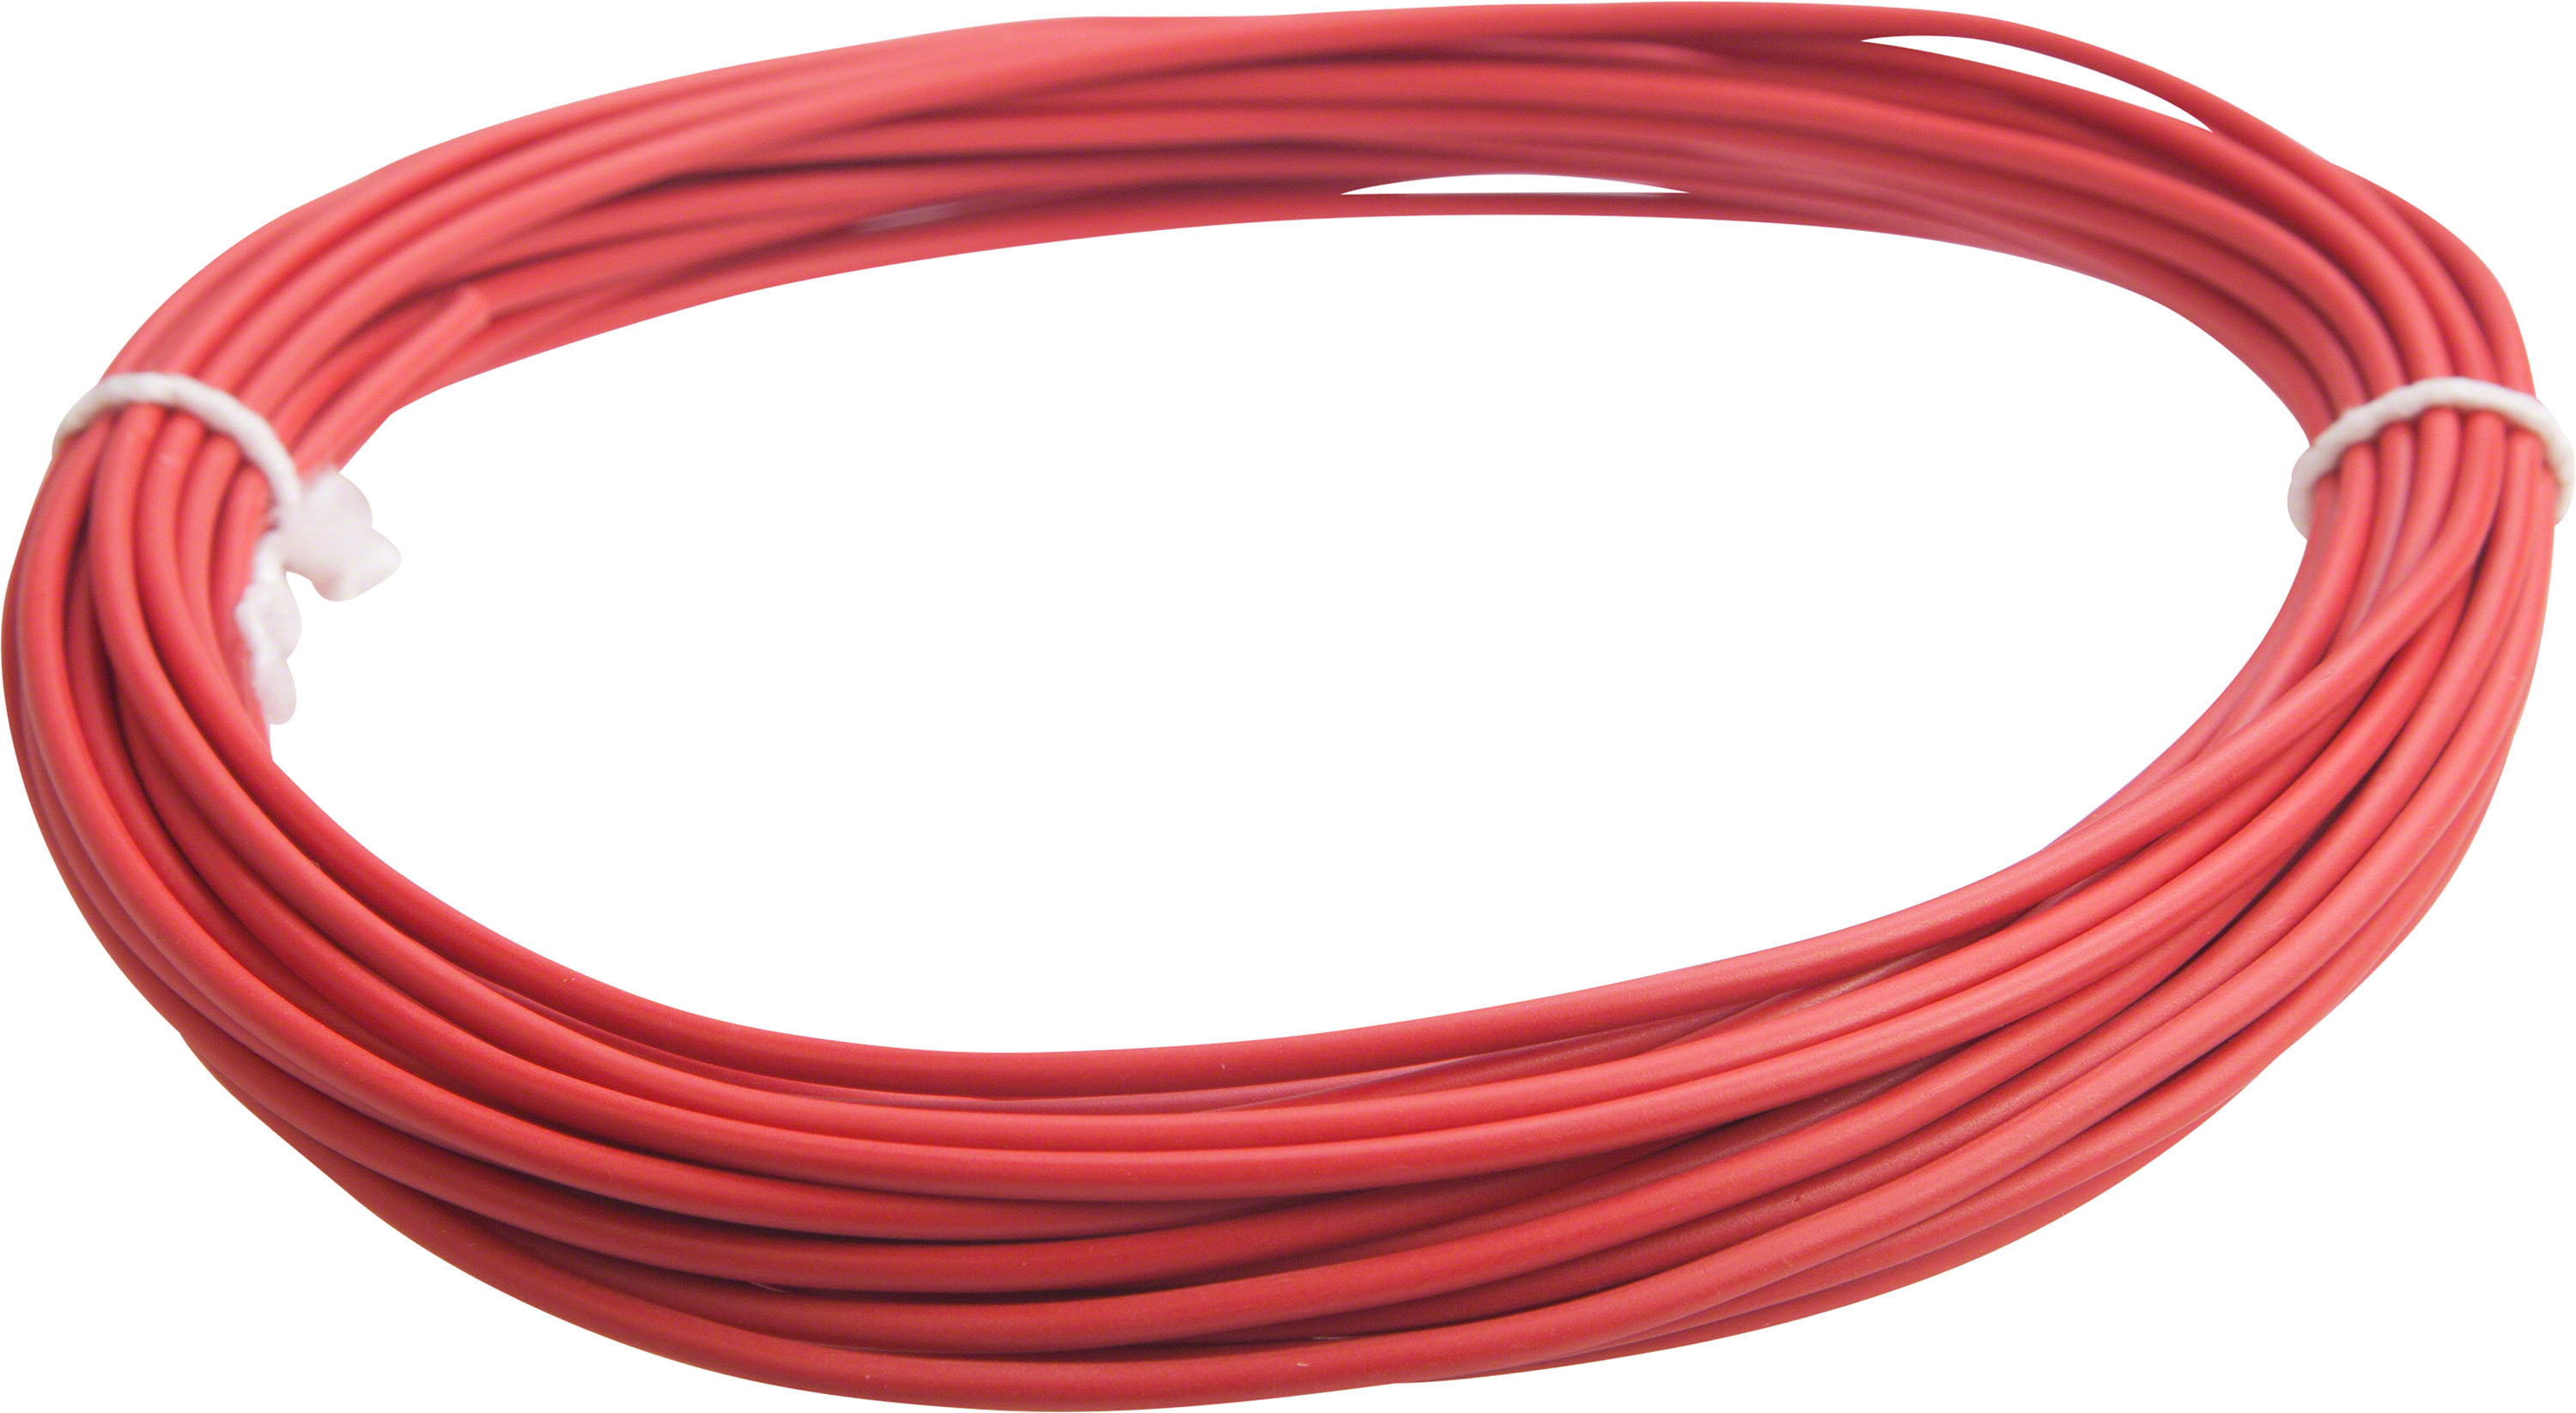 Handelsware Litzen Kabel 1.00 mm² Rot 10 Meter H05VK 1,0-10RT -  3DWare Shop Schweiz